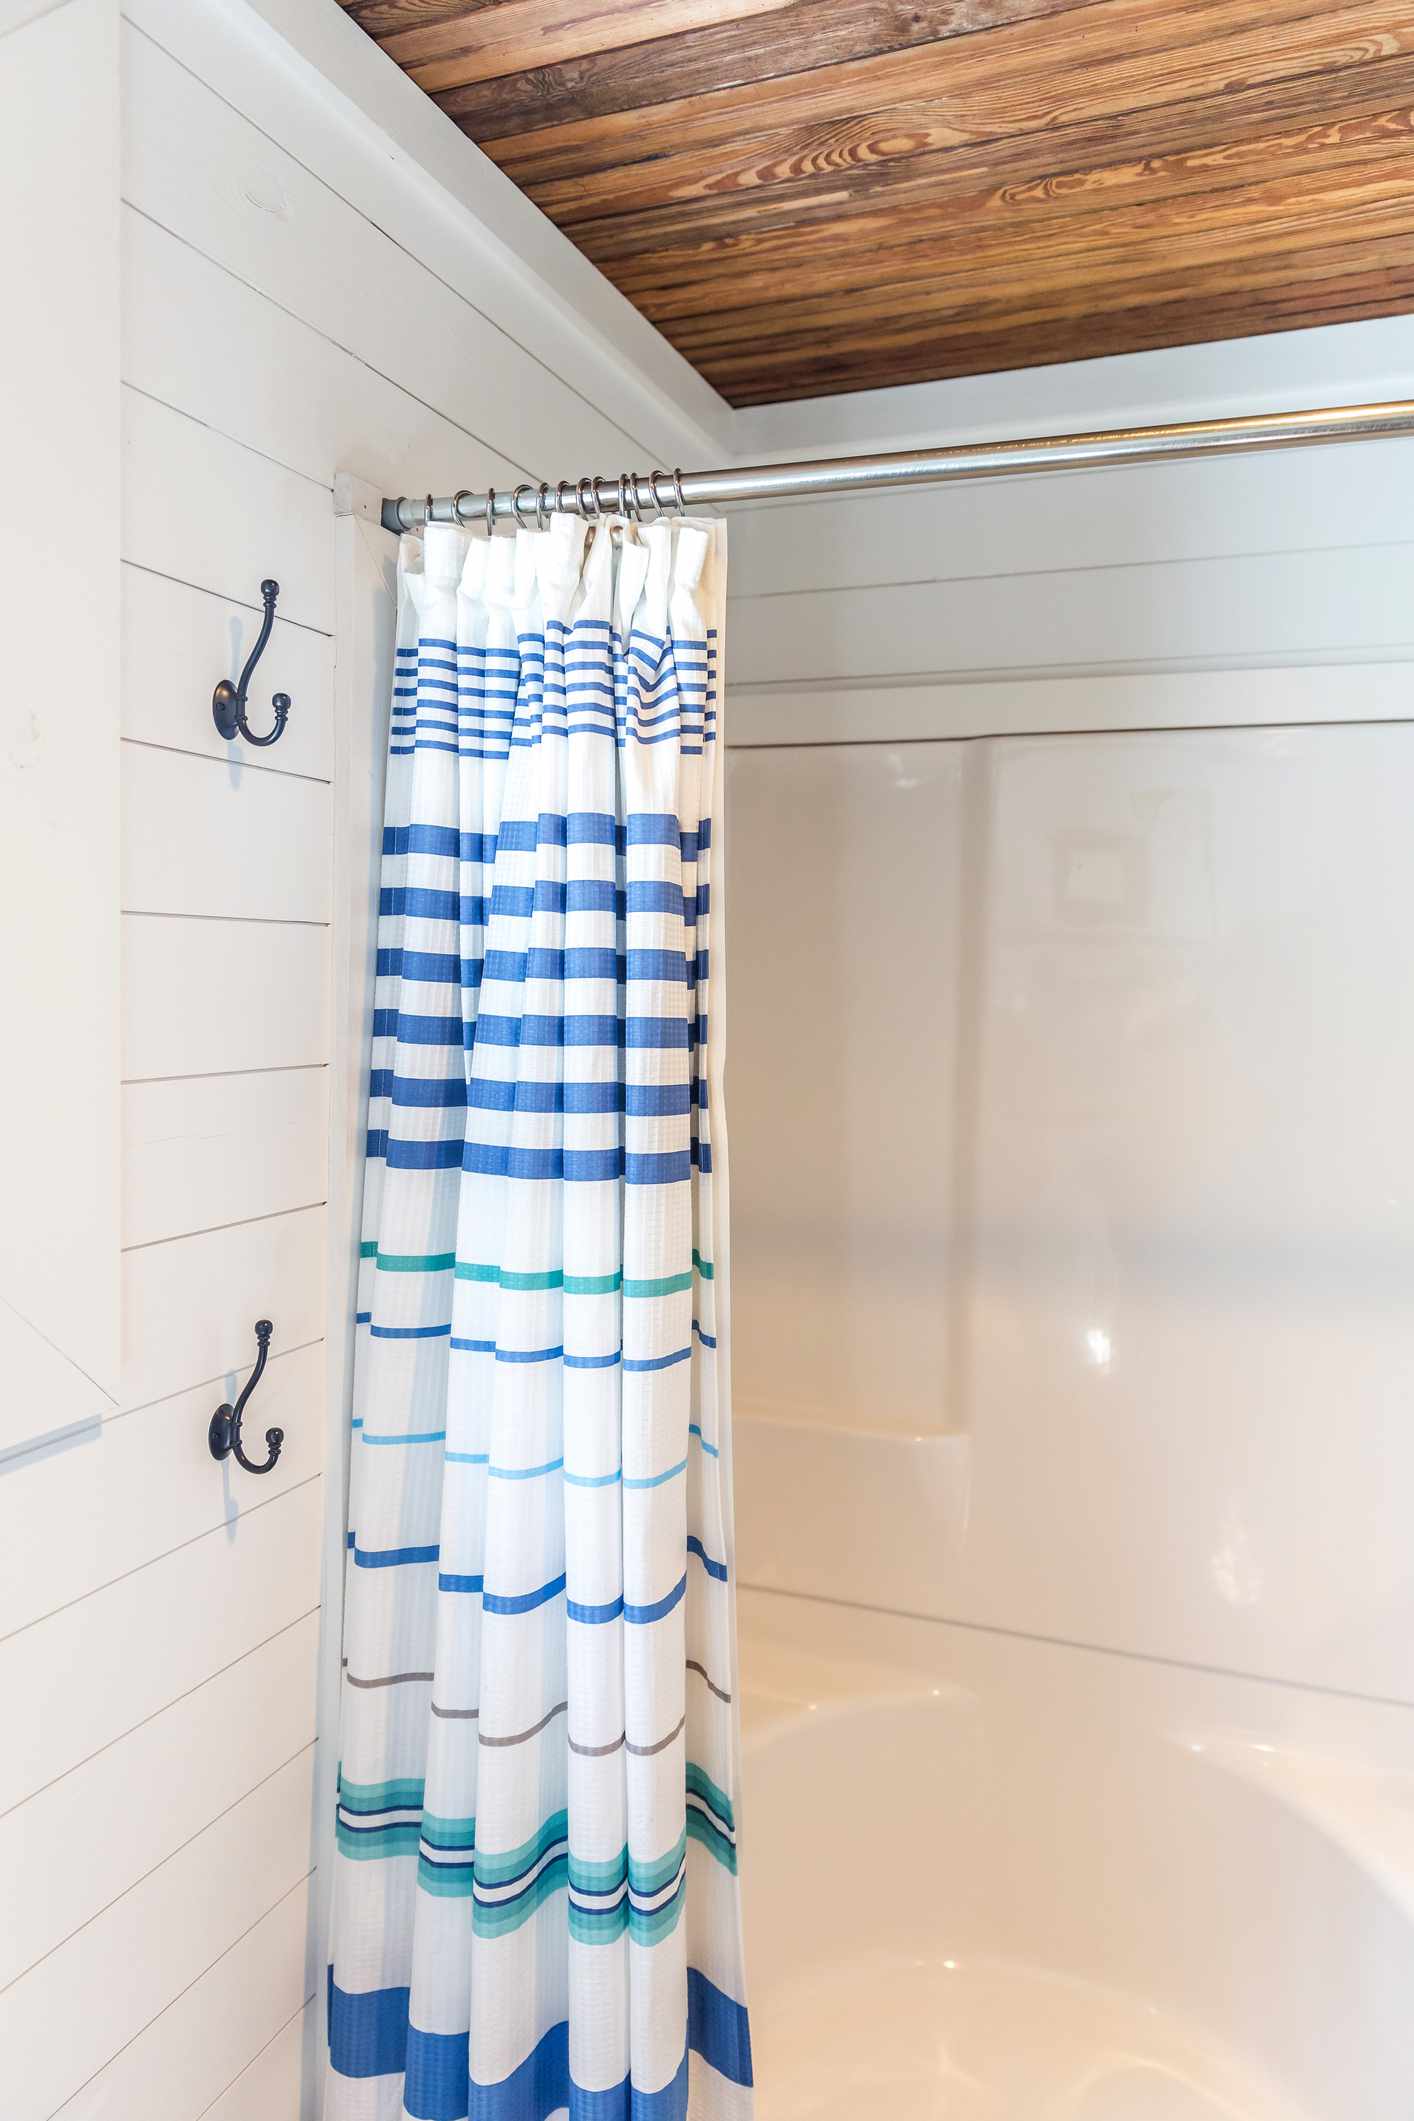 Salle de bains avec murs en shiplap blanc, plafond en bois teinté et rideau de douche à rayures.